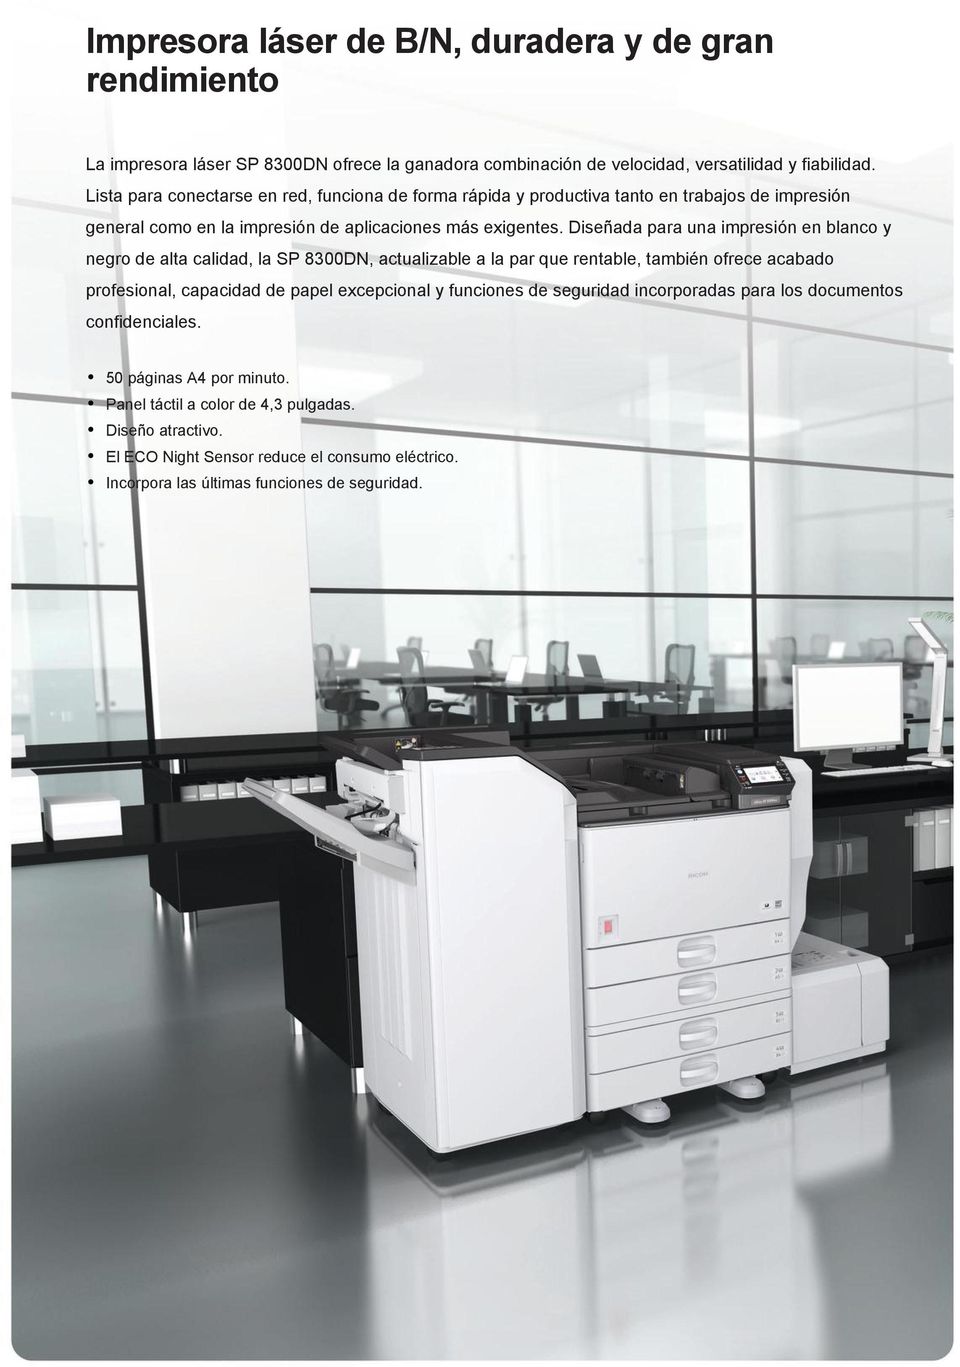 Diseñada para una impresión en blanco y negro de alta calidad, la SP 8300DN, actualizable a la par que rentable, también ofrece acabado profesional, capacidad de papel excepcional y